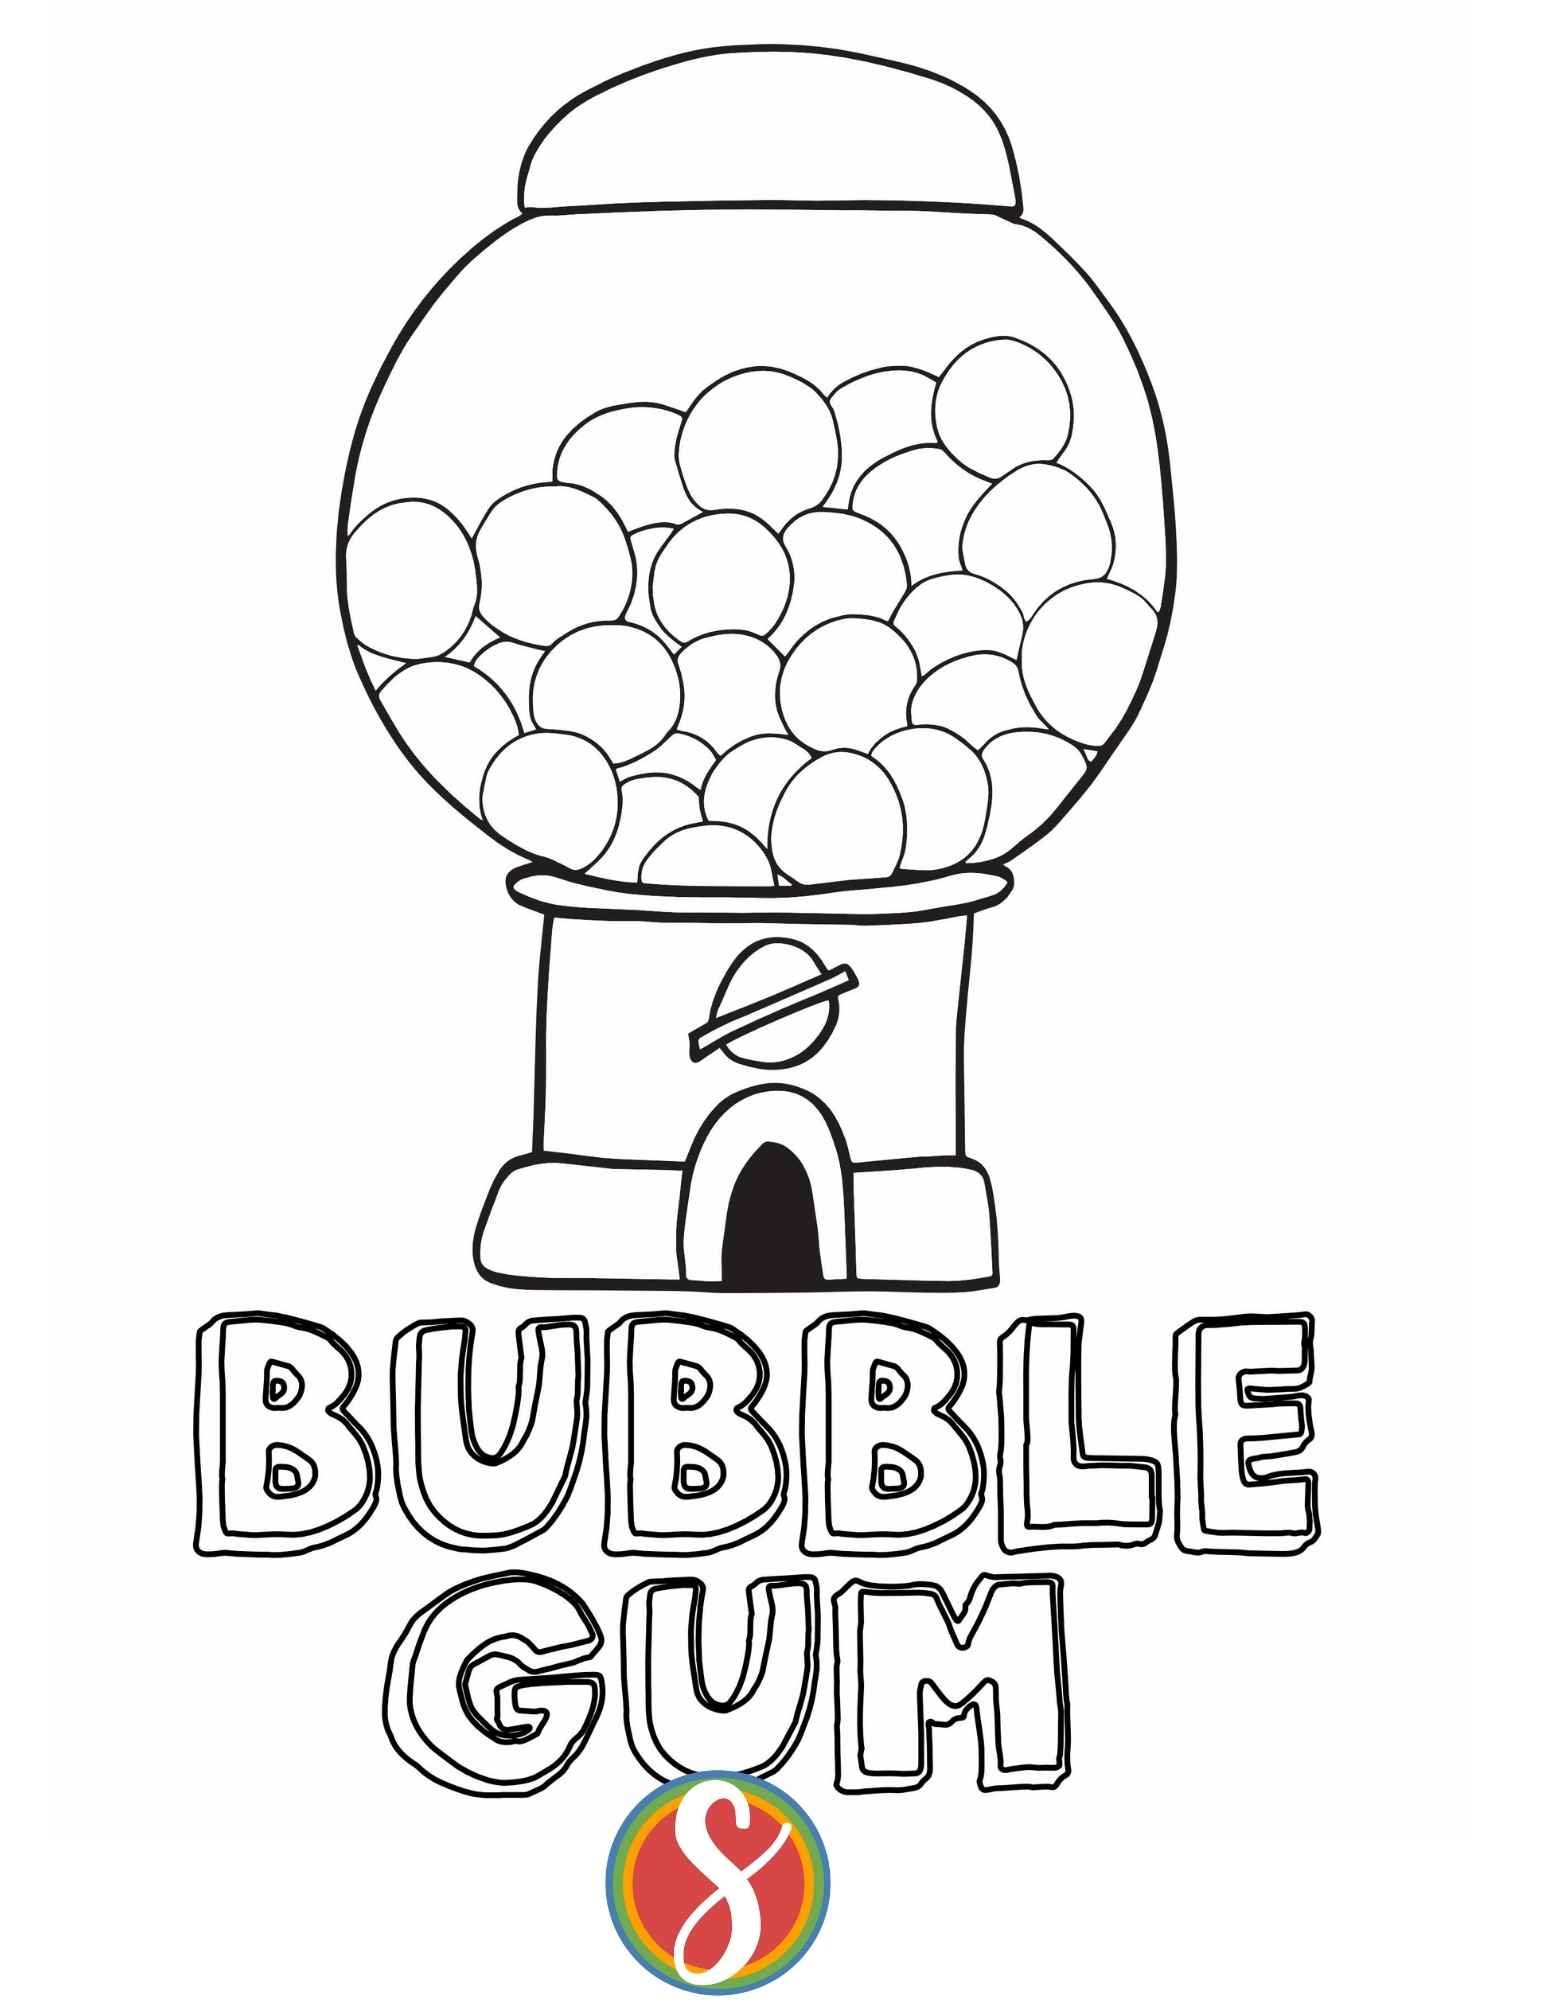 Free bubble gum coloring pages â stevie doodles